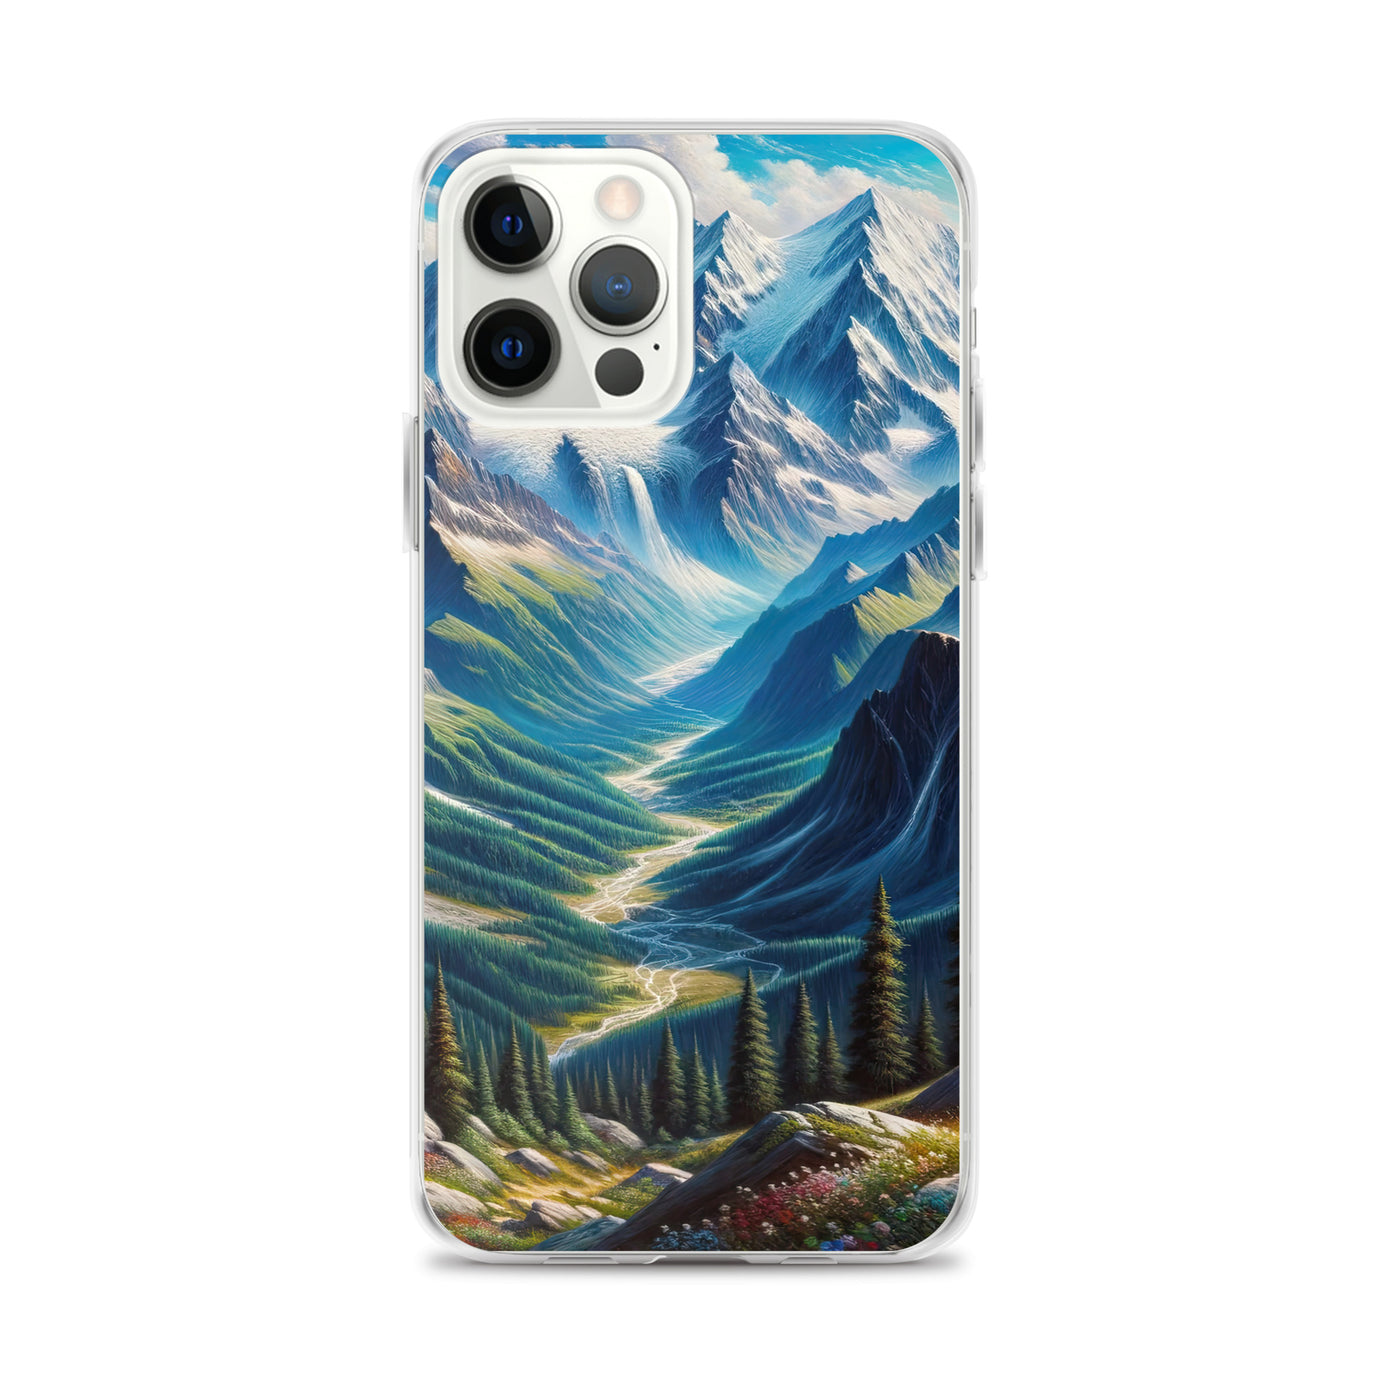 Panorama-Ölgemälde der Alpen mit schneebedeckten Gipfeln und schlängelnden Flusstälern - iPhone Schutzhülle (durchsichtig) berge xxx yyy zzz iPhone 12 Pro Max